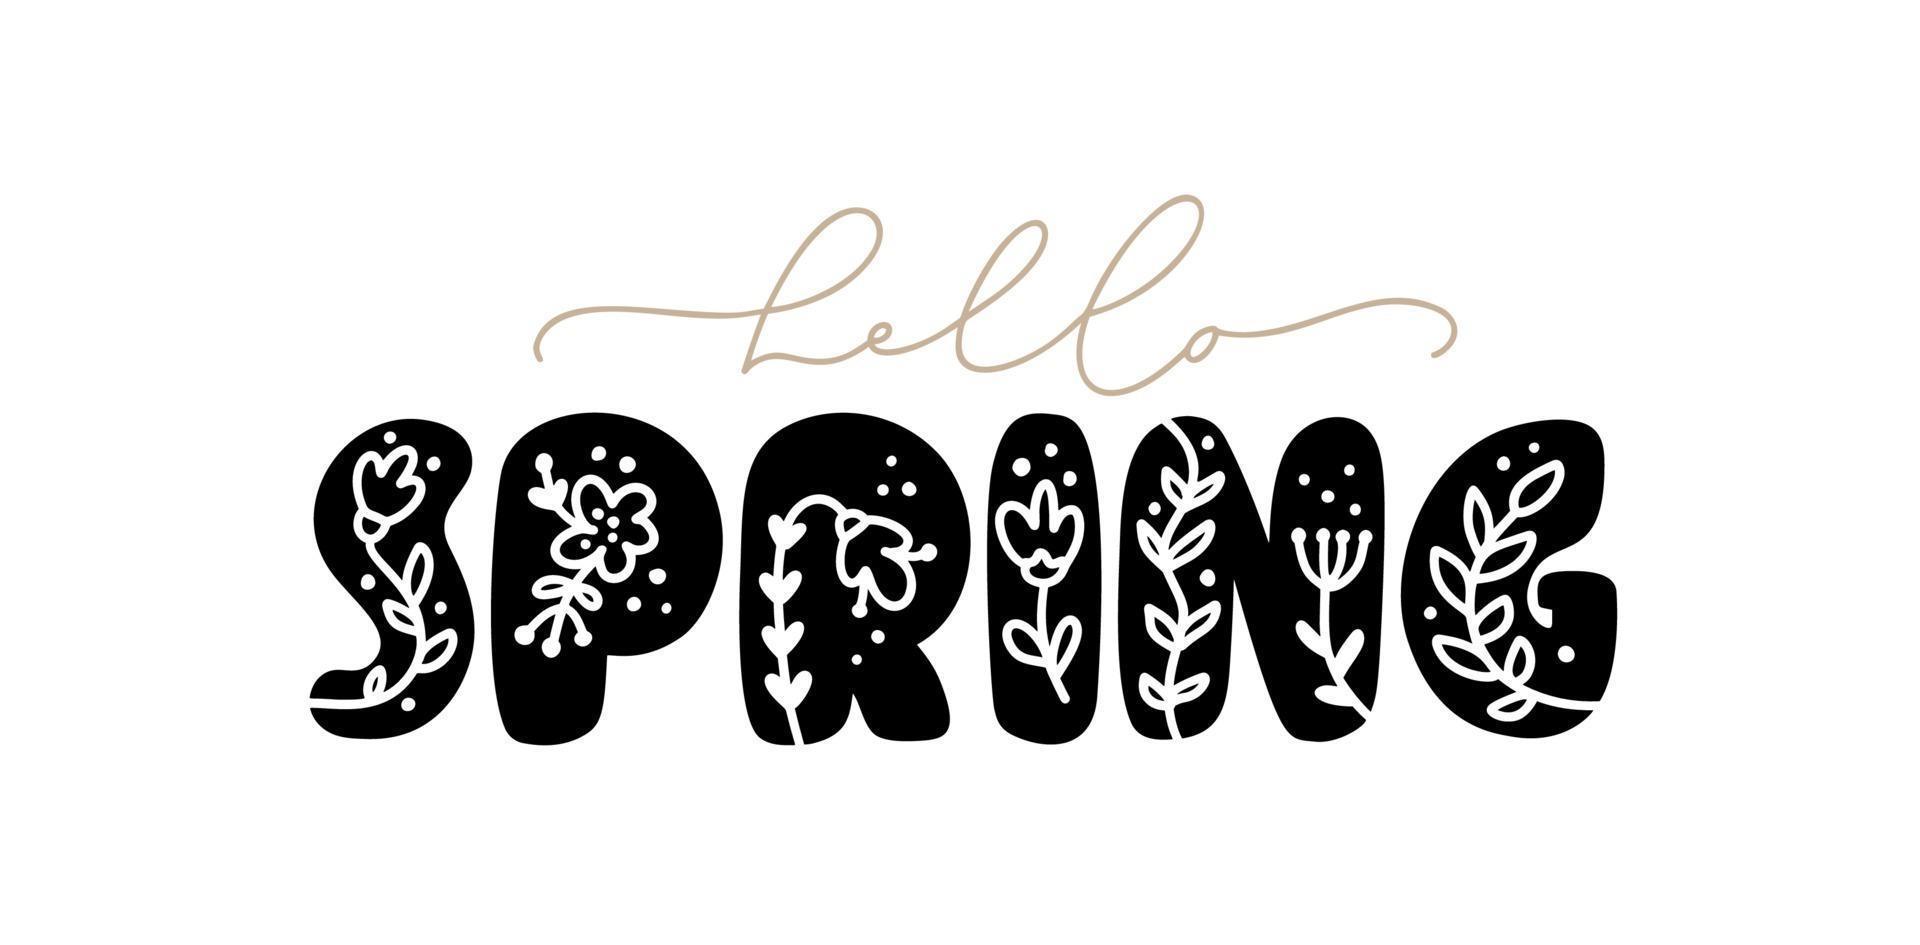 kalligrafi bokstäver fras hej våren. vektor handritad isolerad text. skiss doodle design för gratulationskort, klippbok, tryck